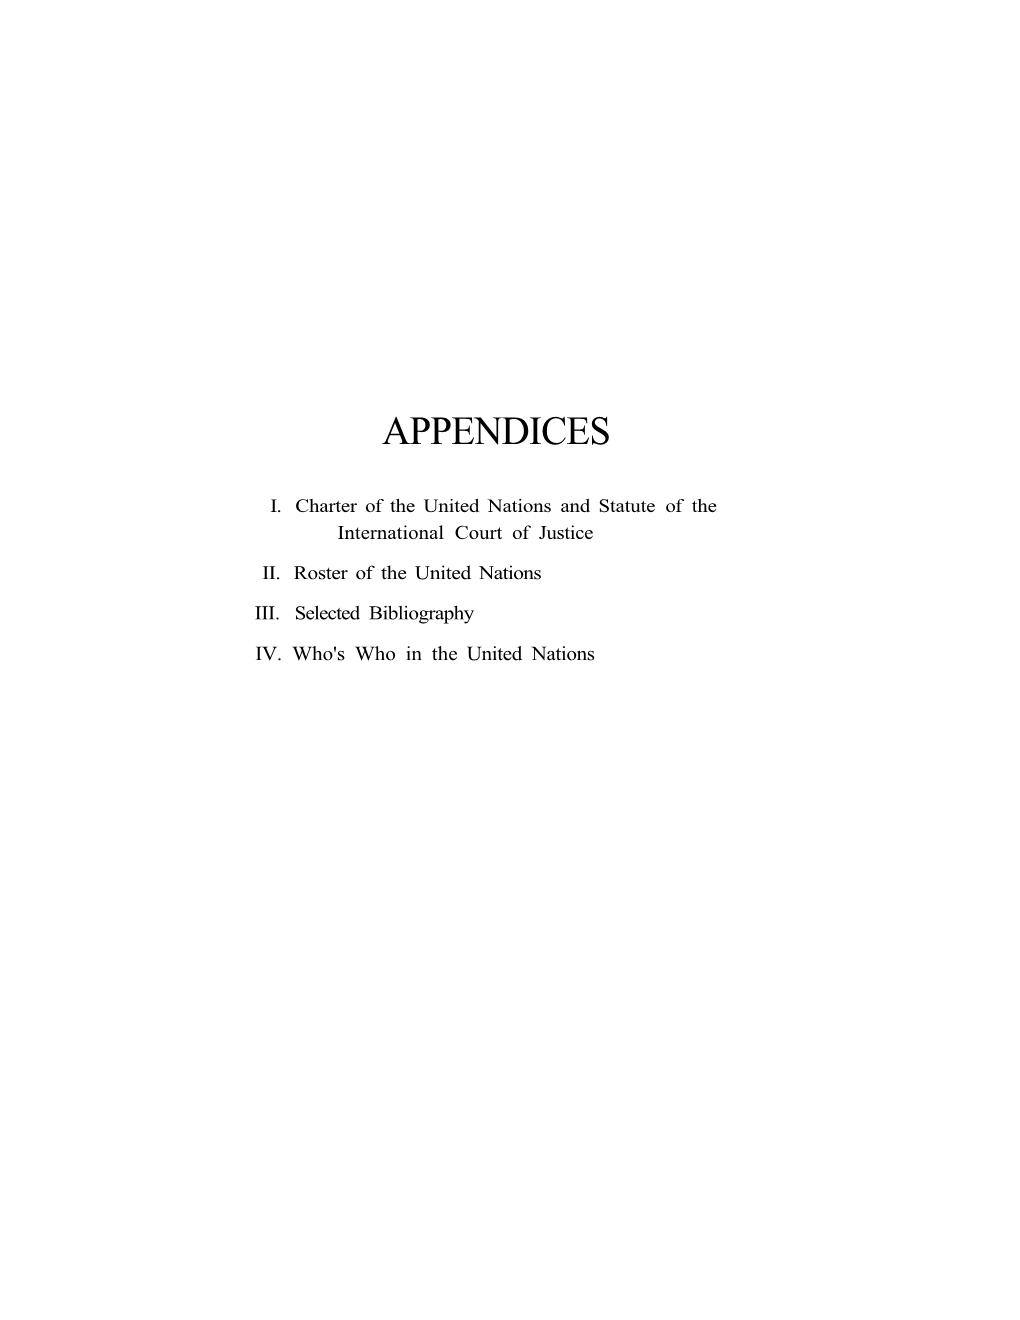 [ 1947-48 ] Appendices